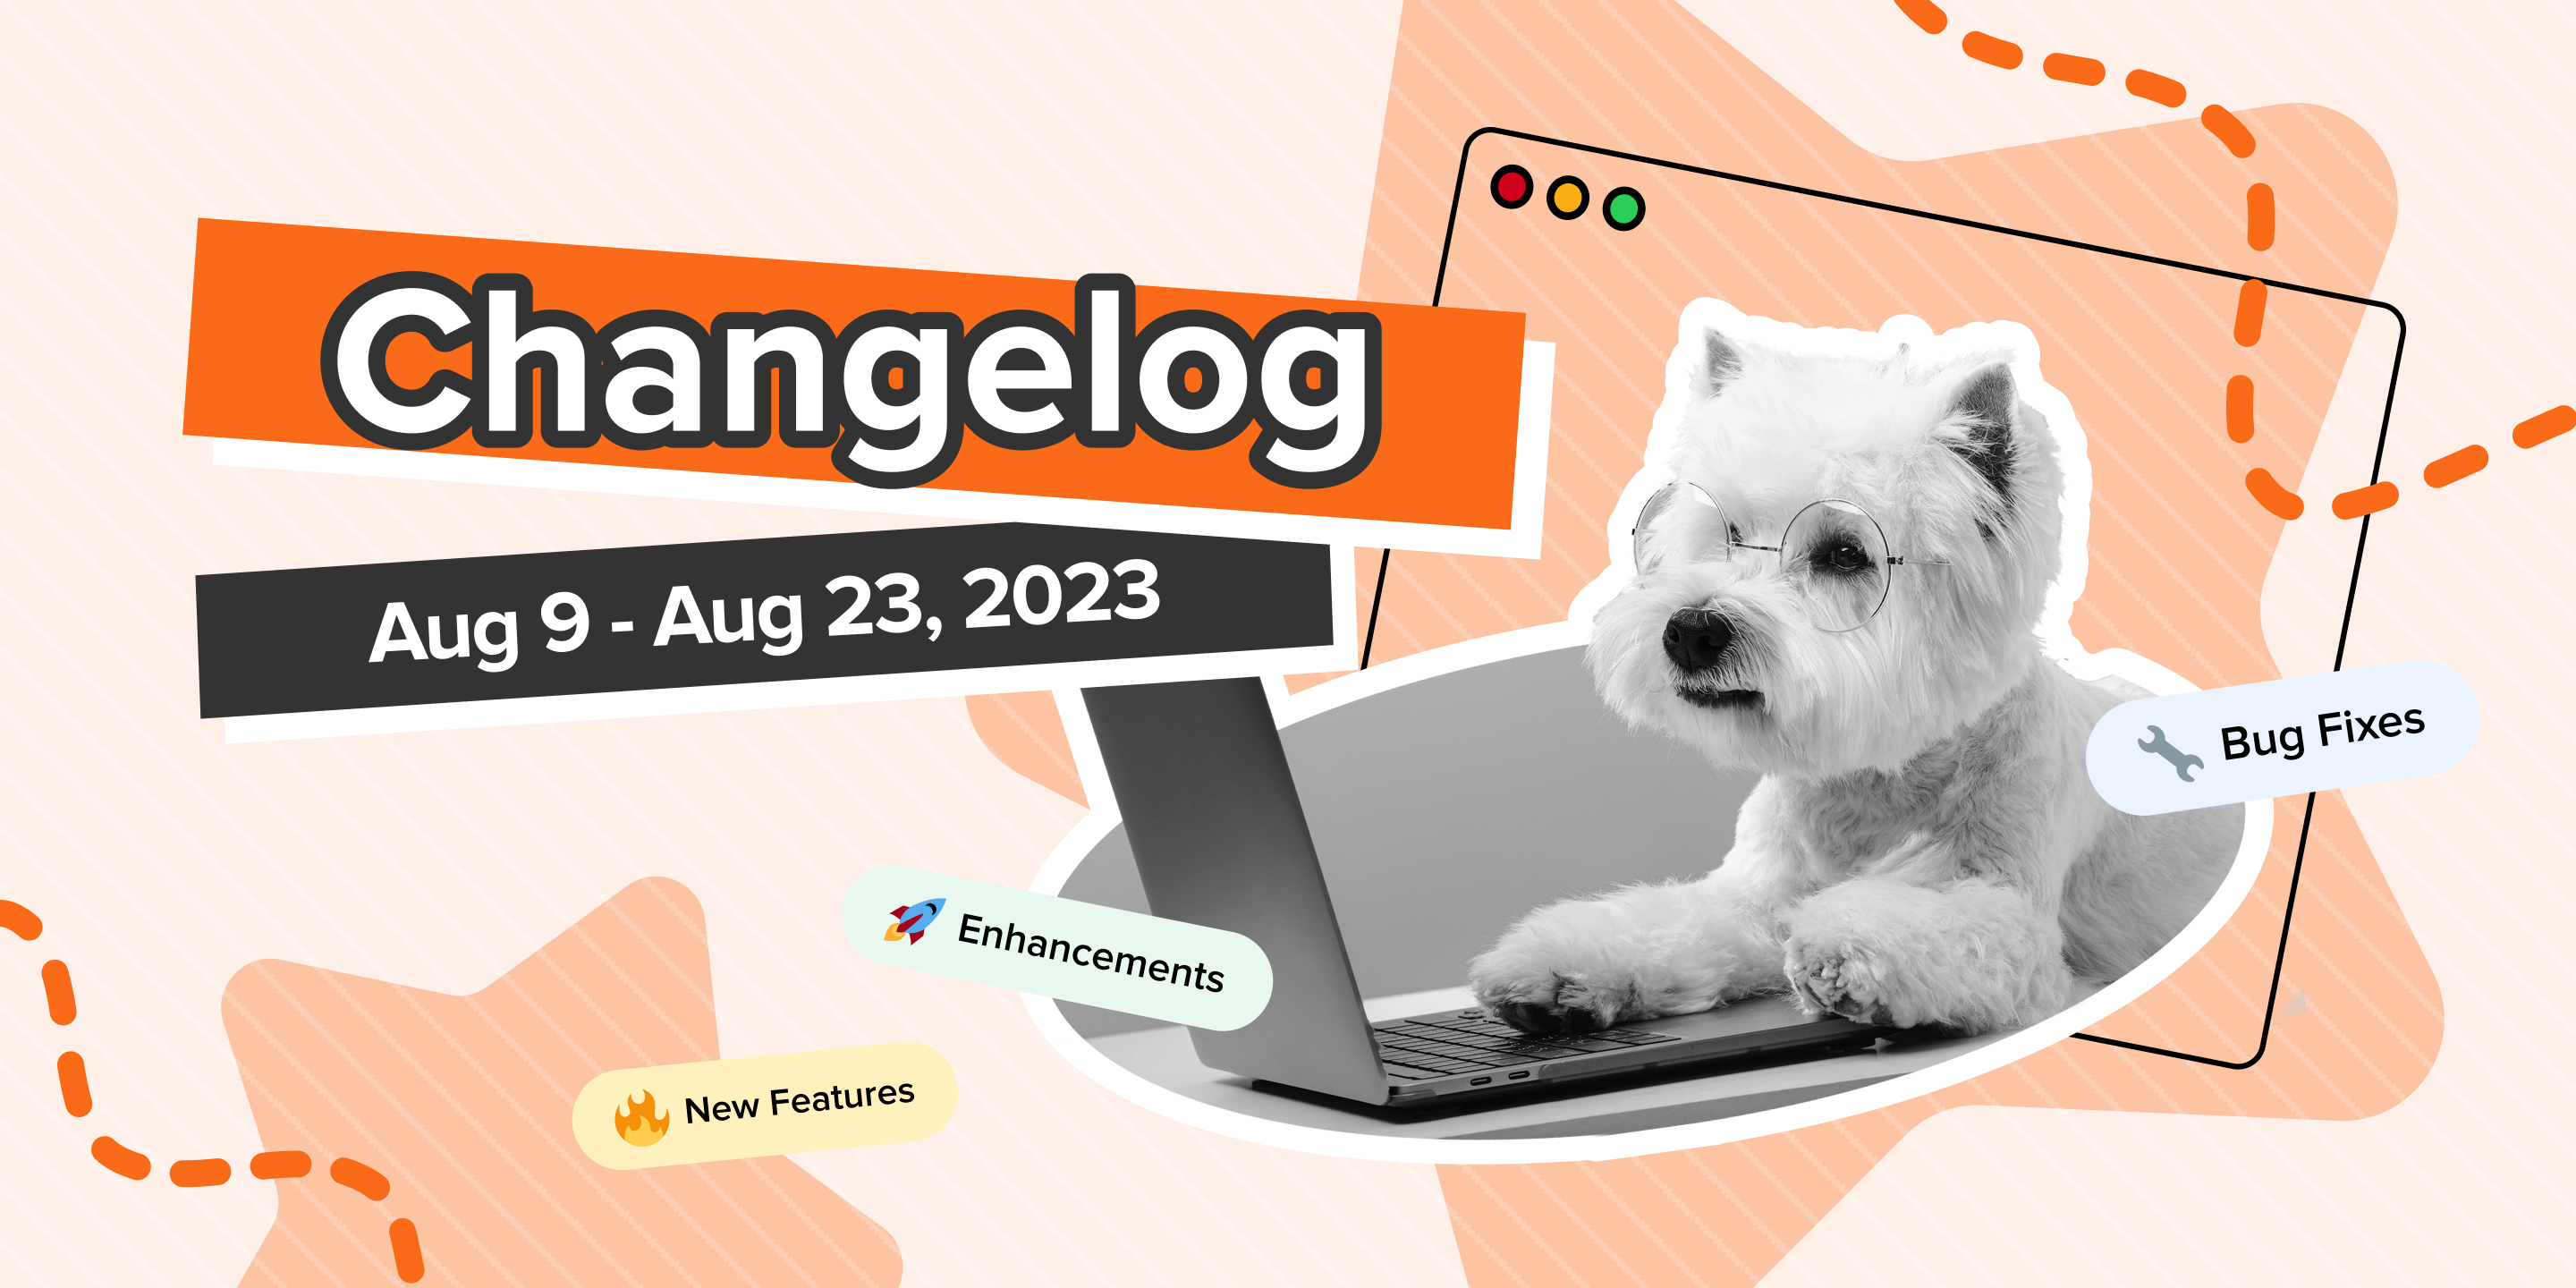 Changelog Vol. 1: August 9 - August 23, 2023